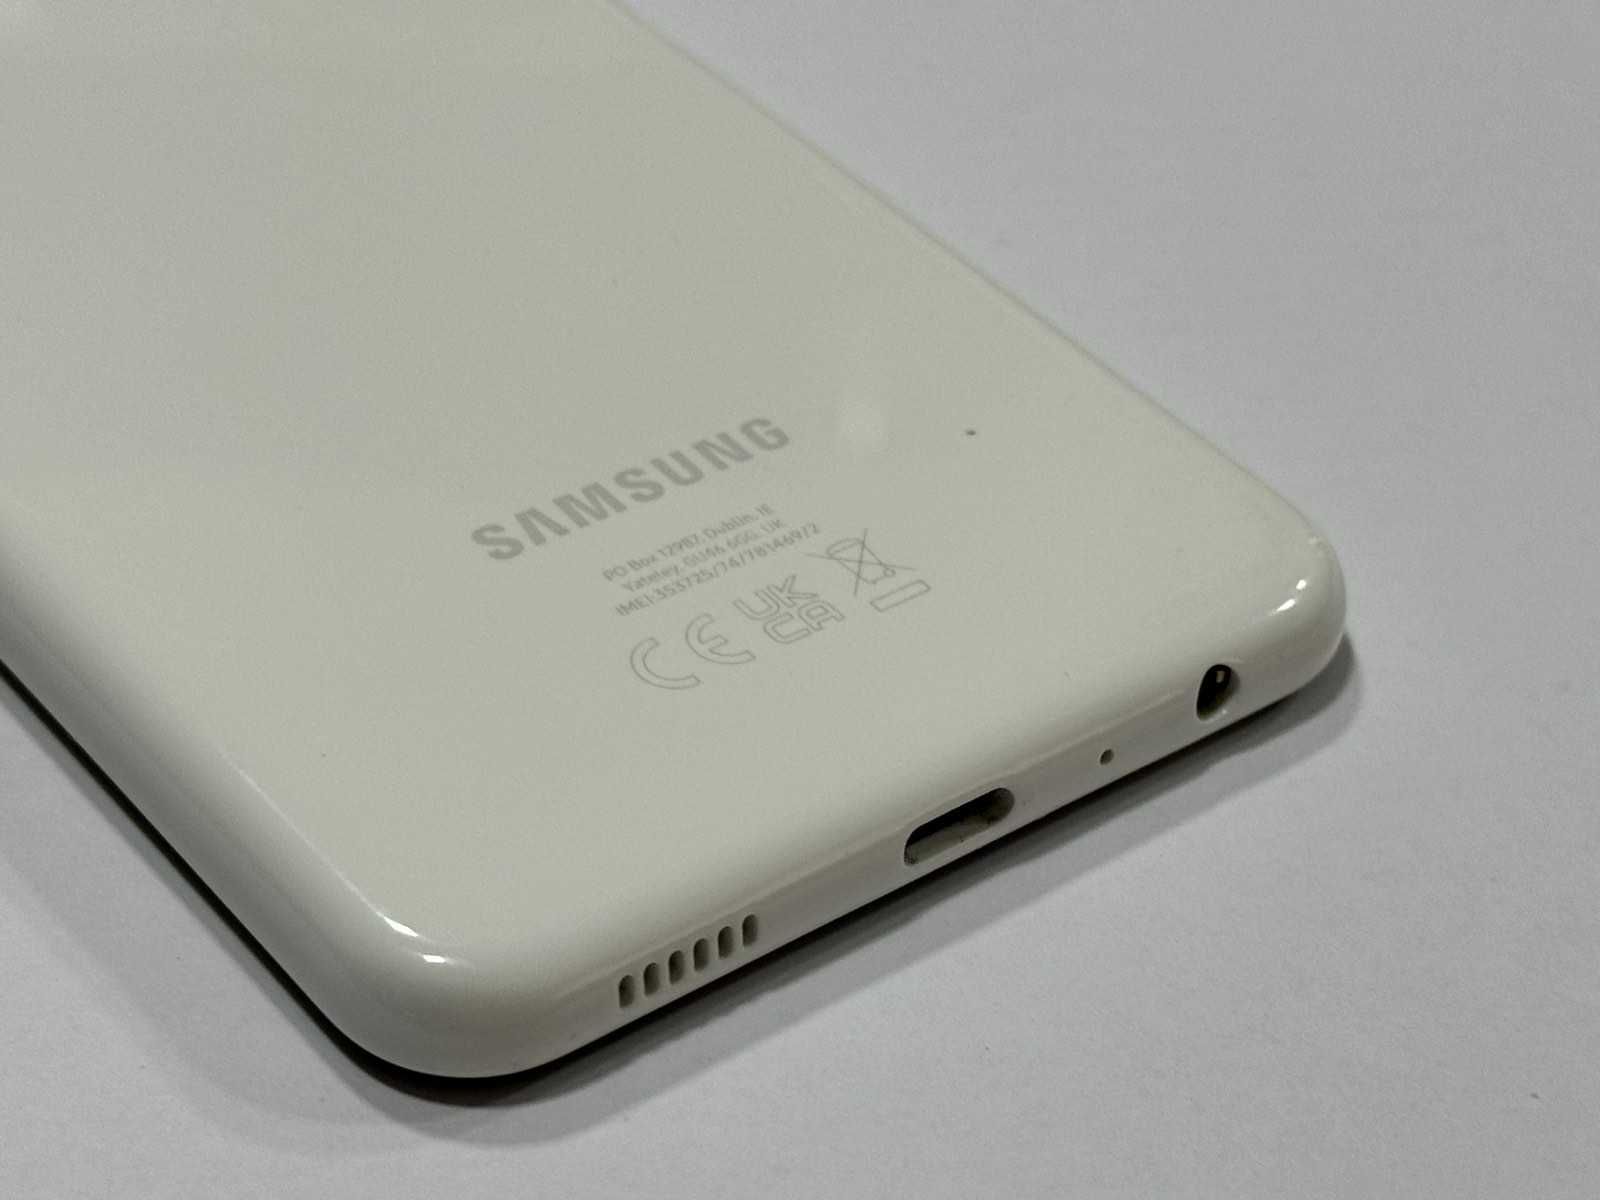 Samsung Galaxy A13 128GB 4GB RAM